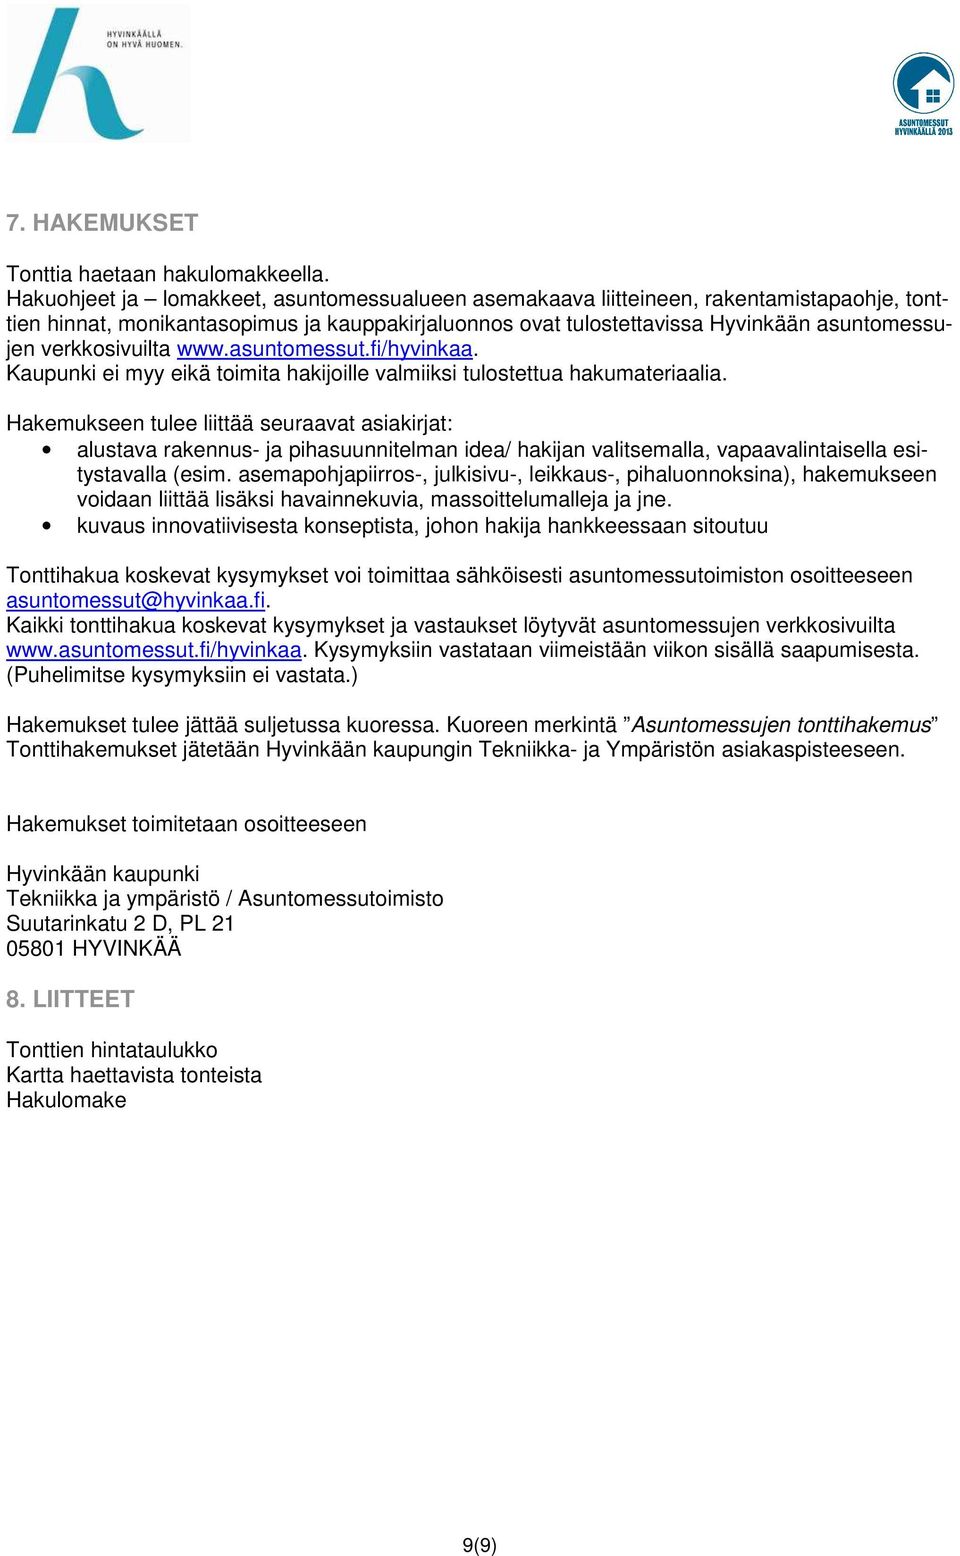 verkkosivuilta www.asuntomessut.fi/hyvinkaa. Kaupunki ei myy eikä toimita hakijoille valmiiksi tulostettua hakumateriaalia.